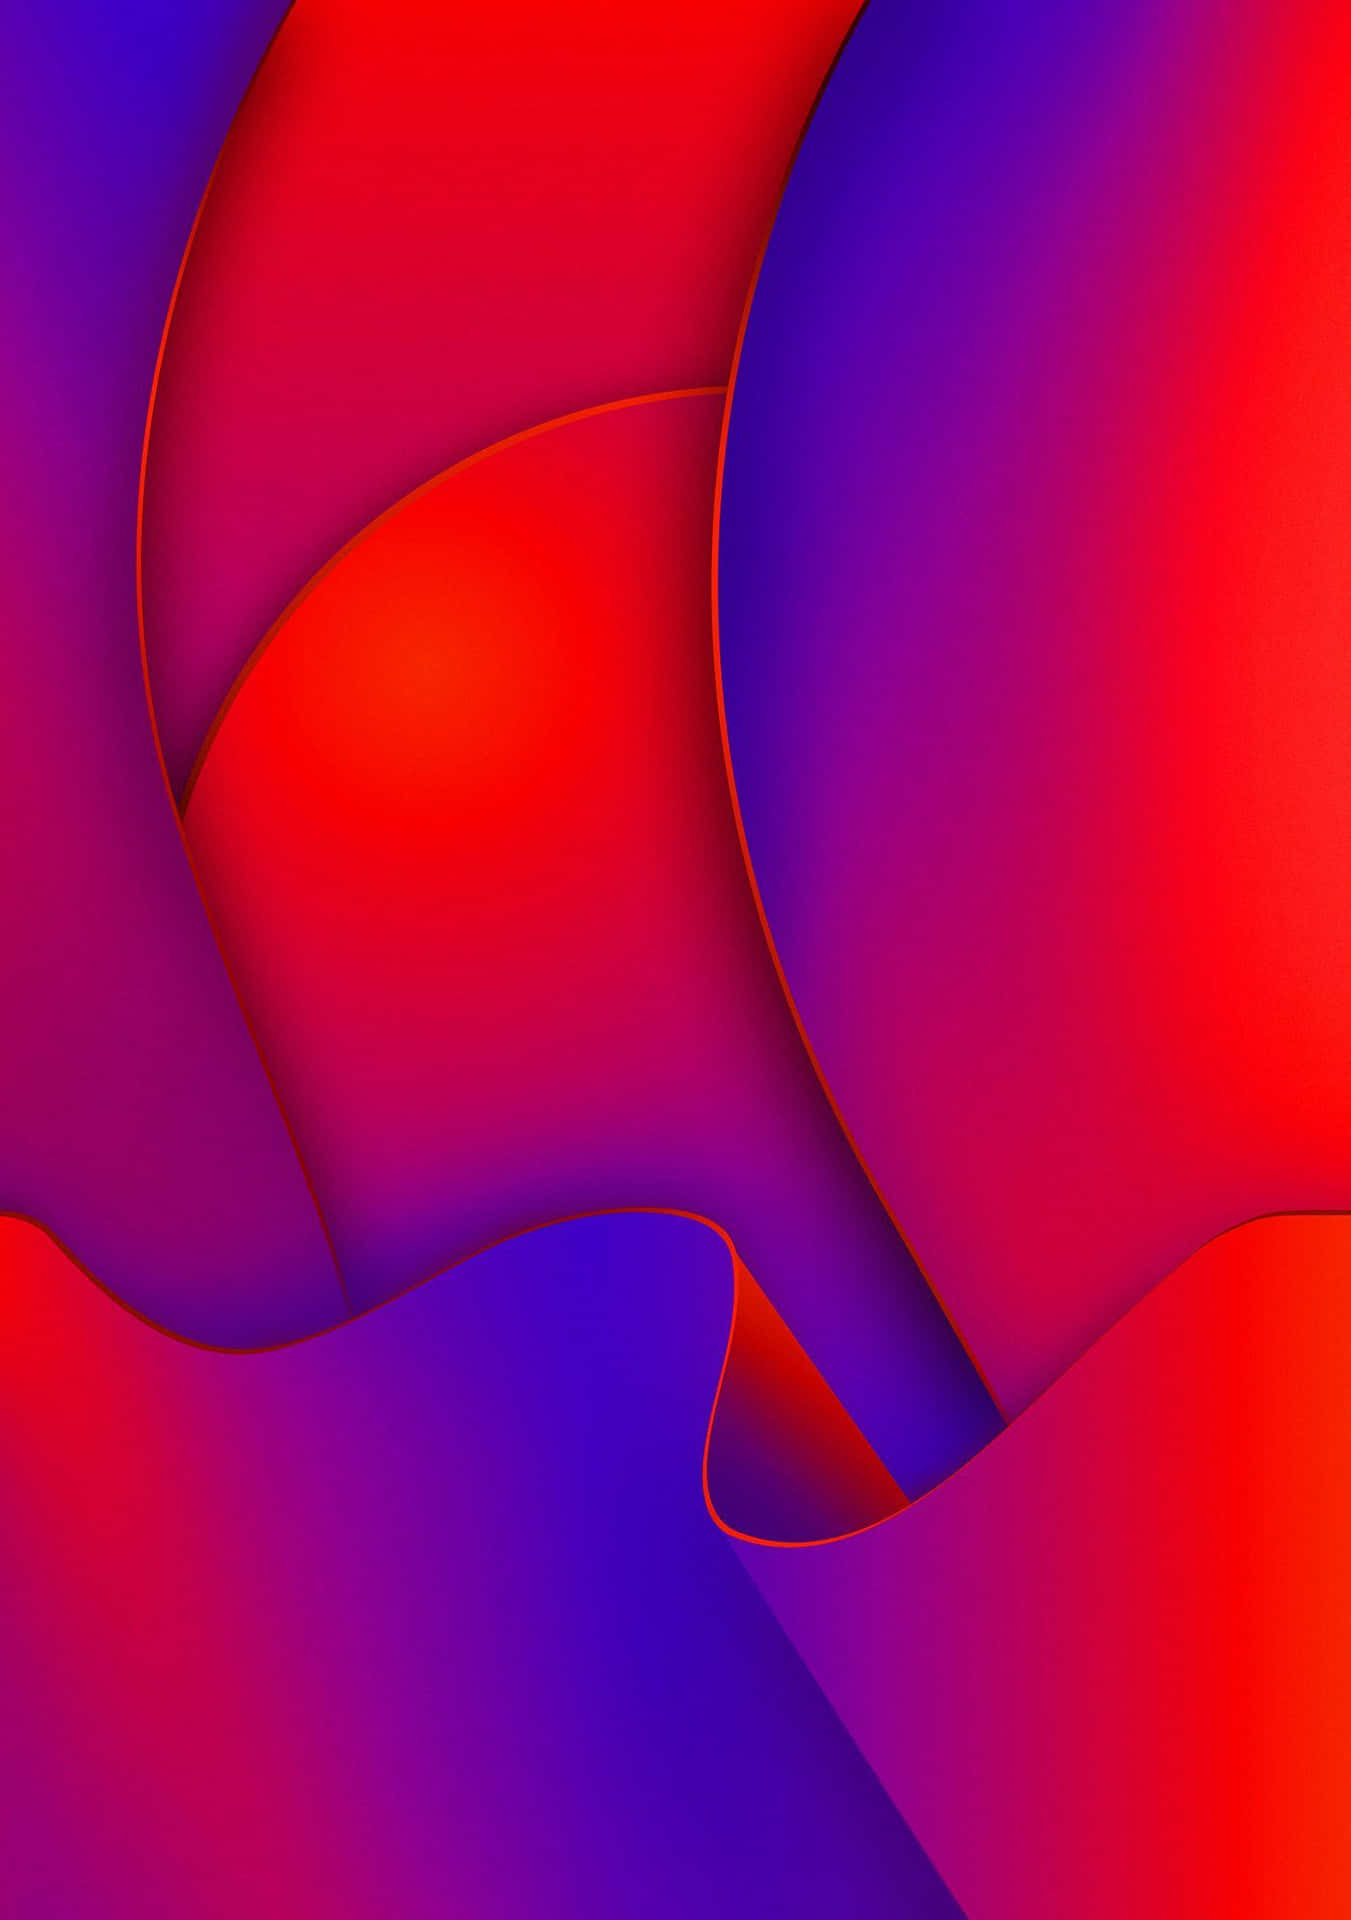 Imagensuperpuesta Abstracta En Color Púrpura Y Rojo